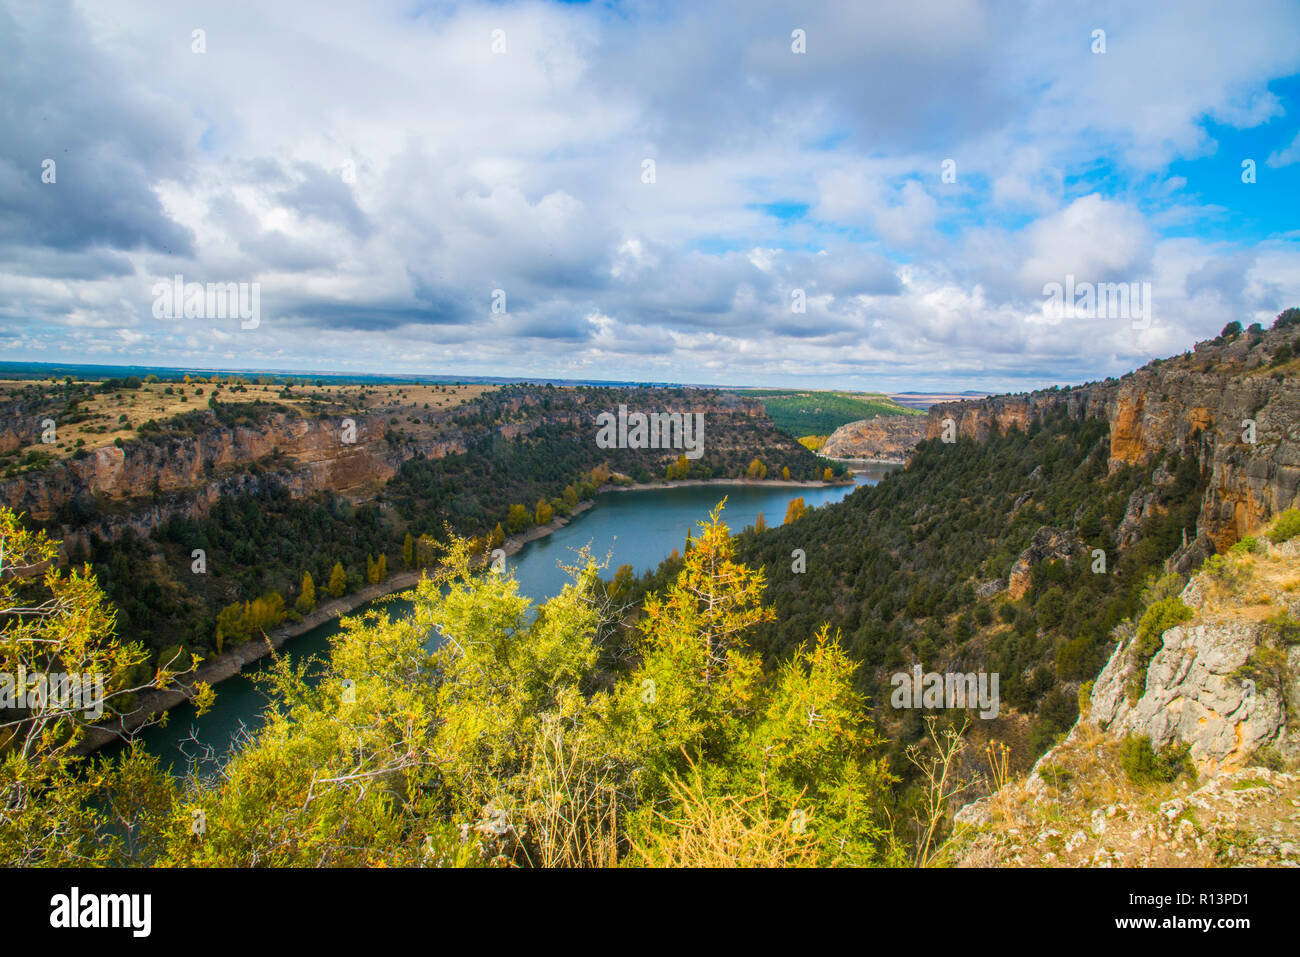 River Duraton. Hoces del Duraton Nature Reserve, Segovia province, Castilla Leon, Spain. Stock Photo